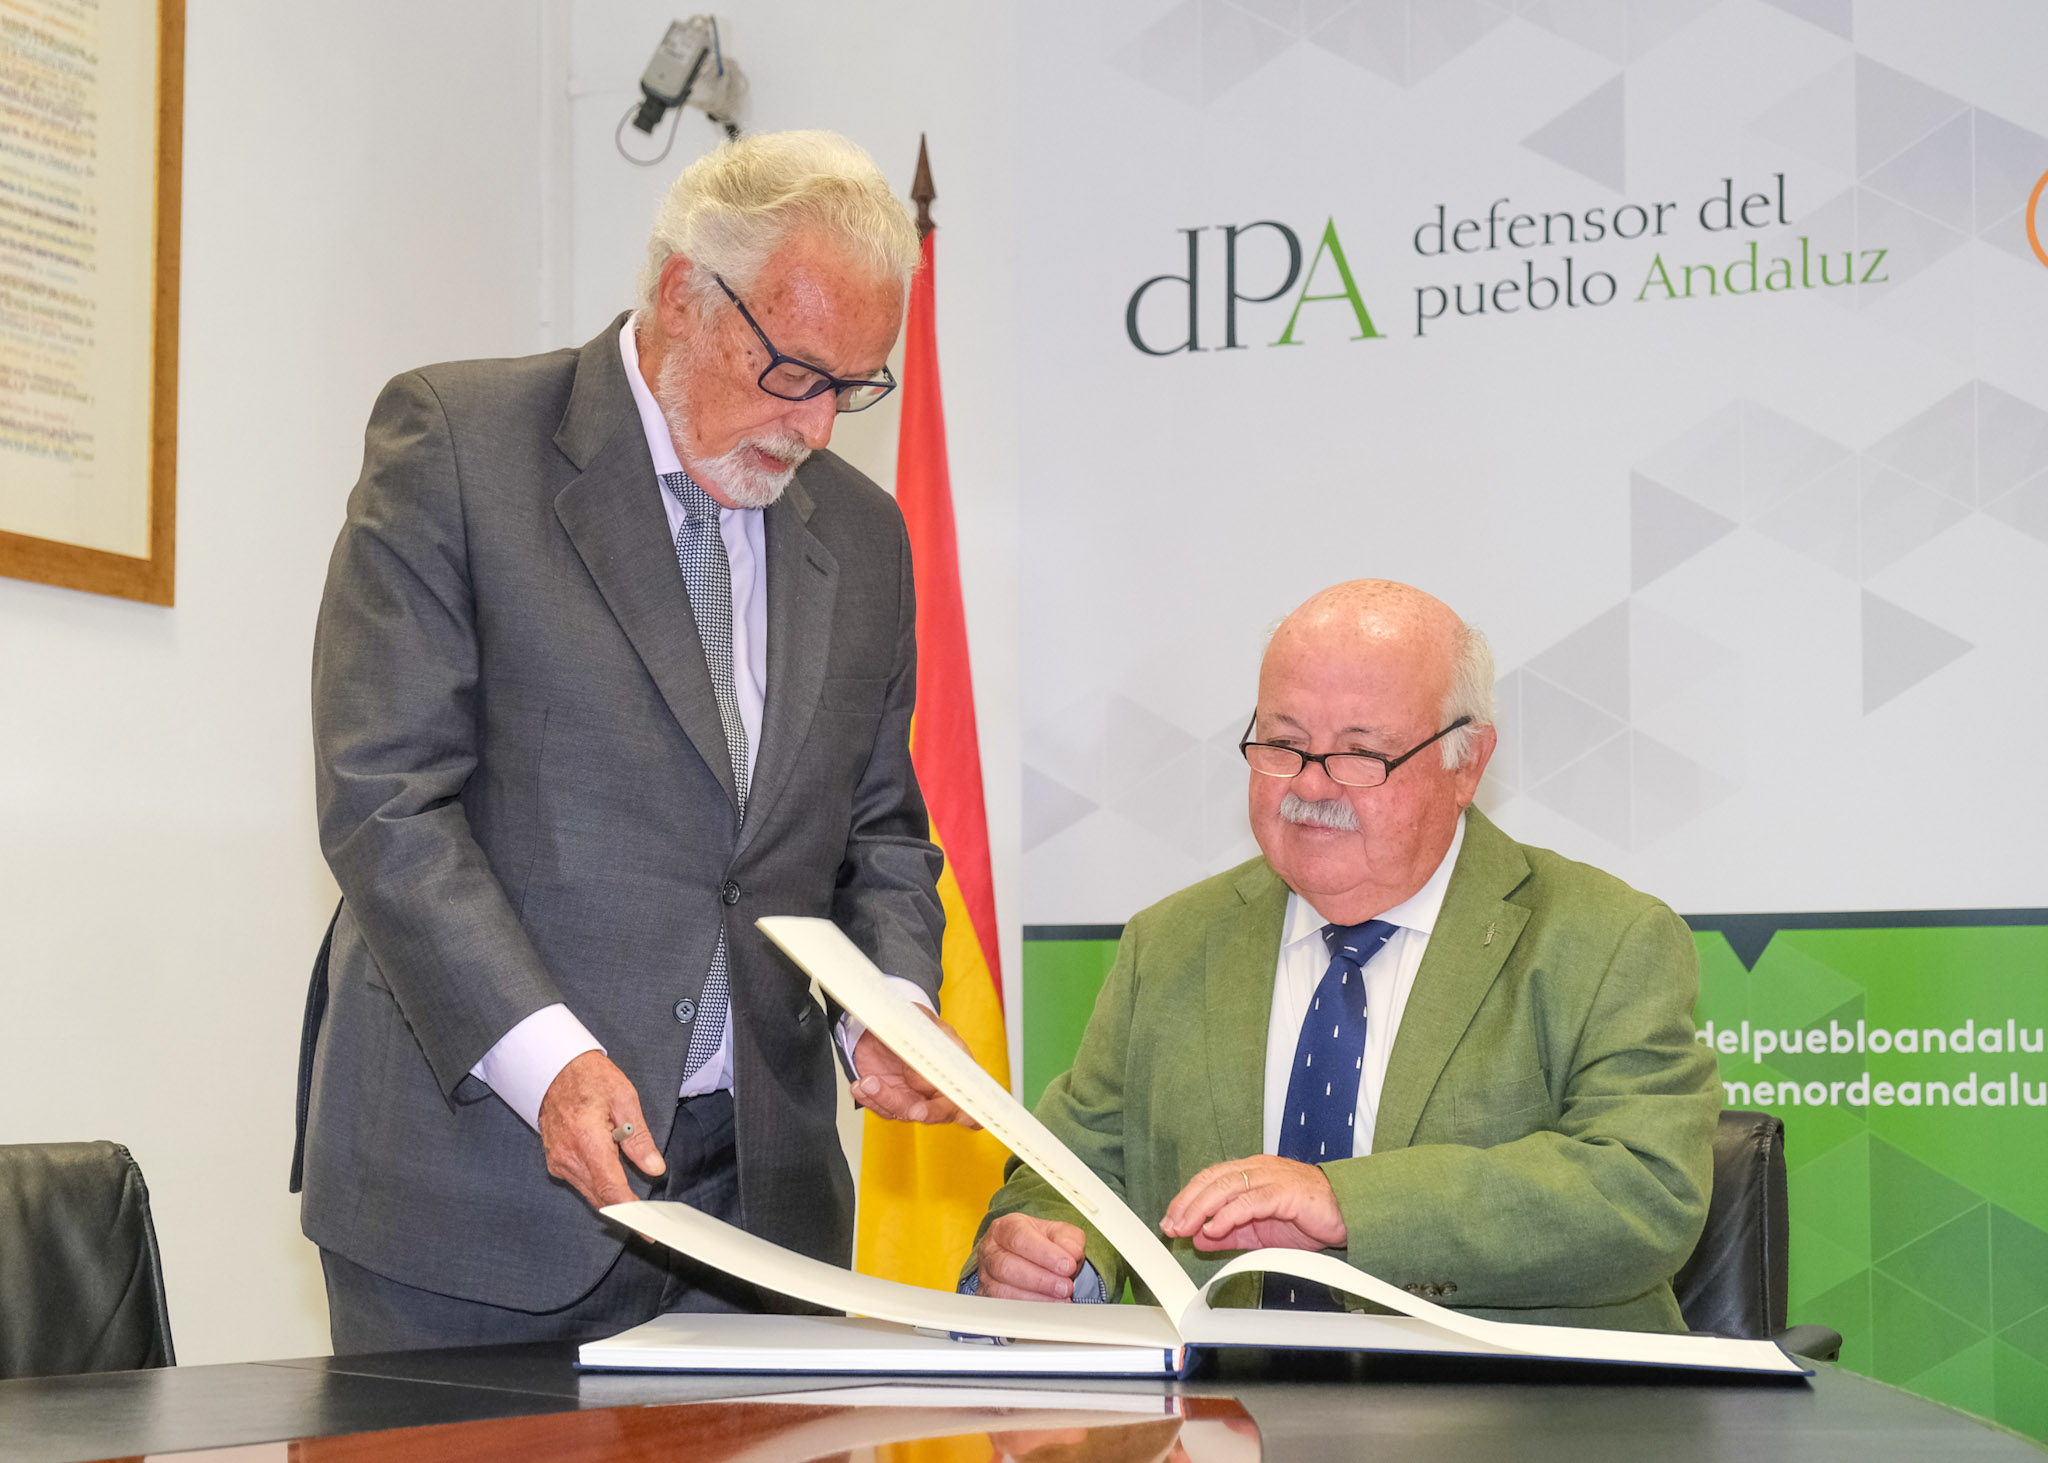   El presidente del Parlamento de Andaluca, Jess Aguirre, firma el libro de honor de la institucin del Defensor del Pueblo Andaluz en presencia de su titular, Jess Maeztu 